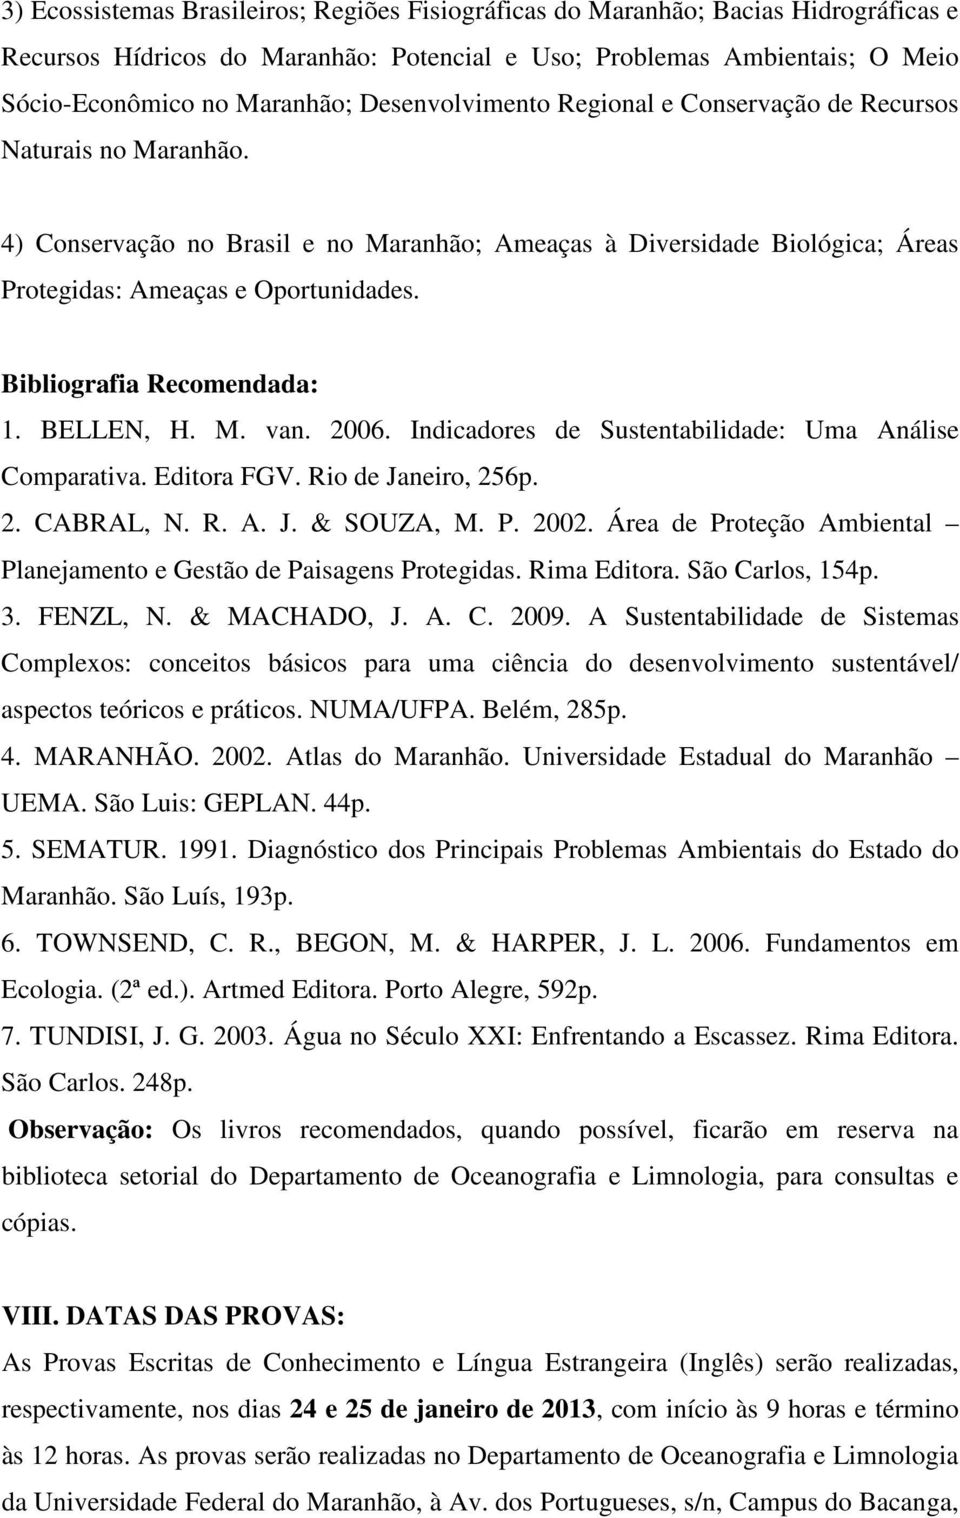 Bibliografia Recomendada: 1. BELLEN, H. M. van. 2006. Indicadores de Sustentabilidade: Uma Análise Comparativa. Editora FGV. Rio de Janeiro, 256p. 2. CABRAL, N. R. A. J. & SOUZA, M. P. 2002.